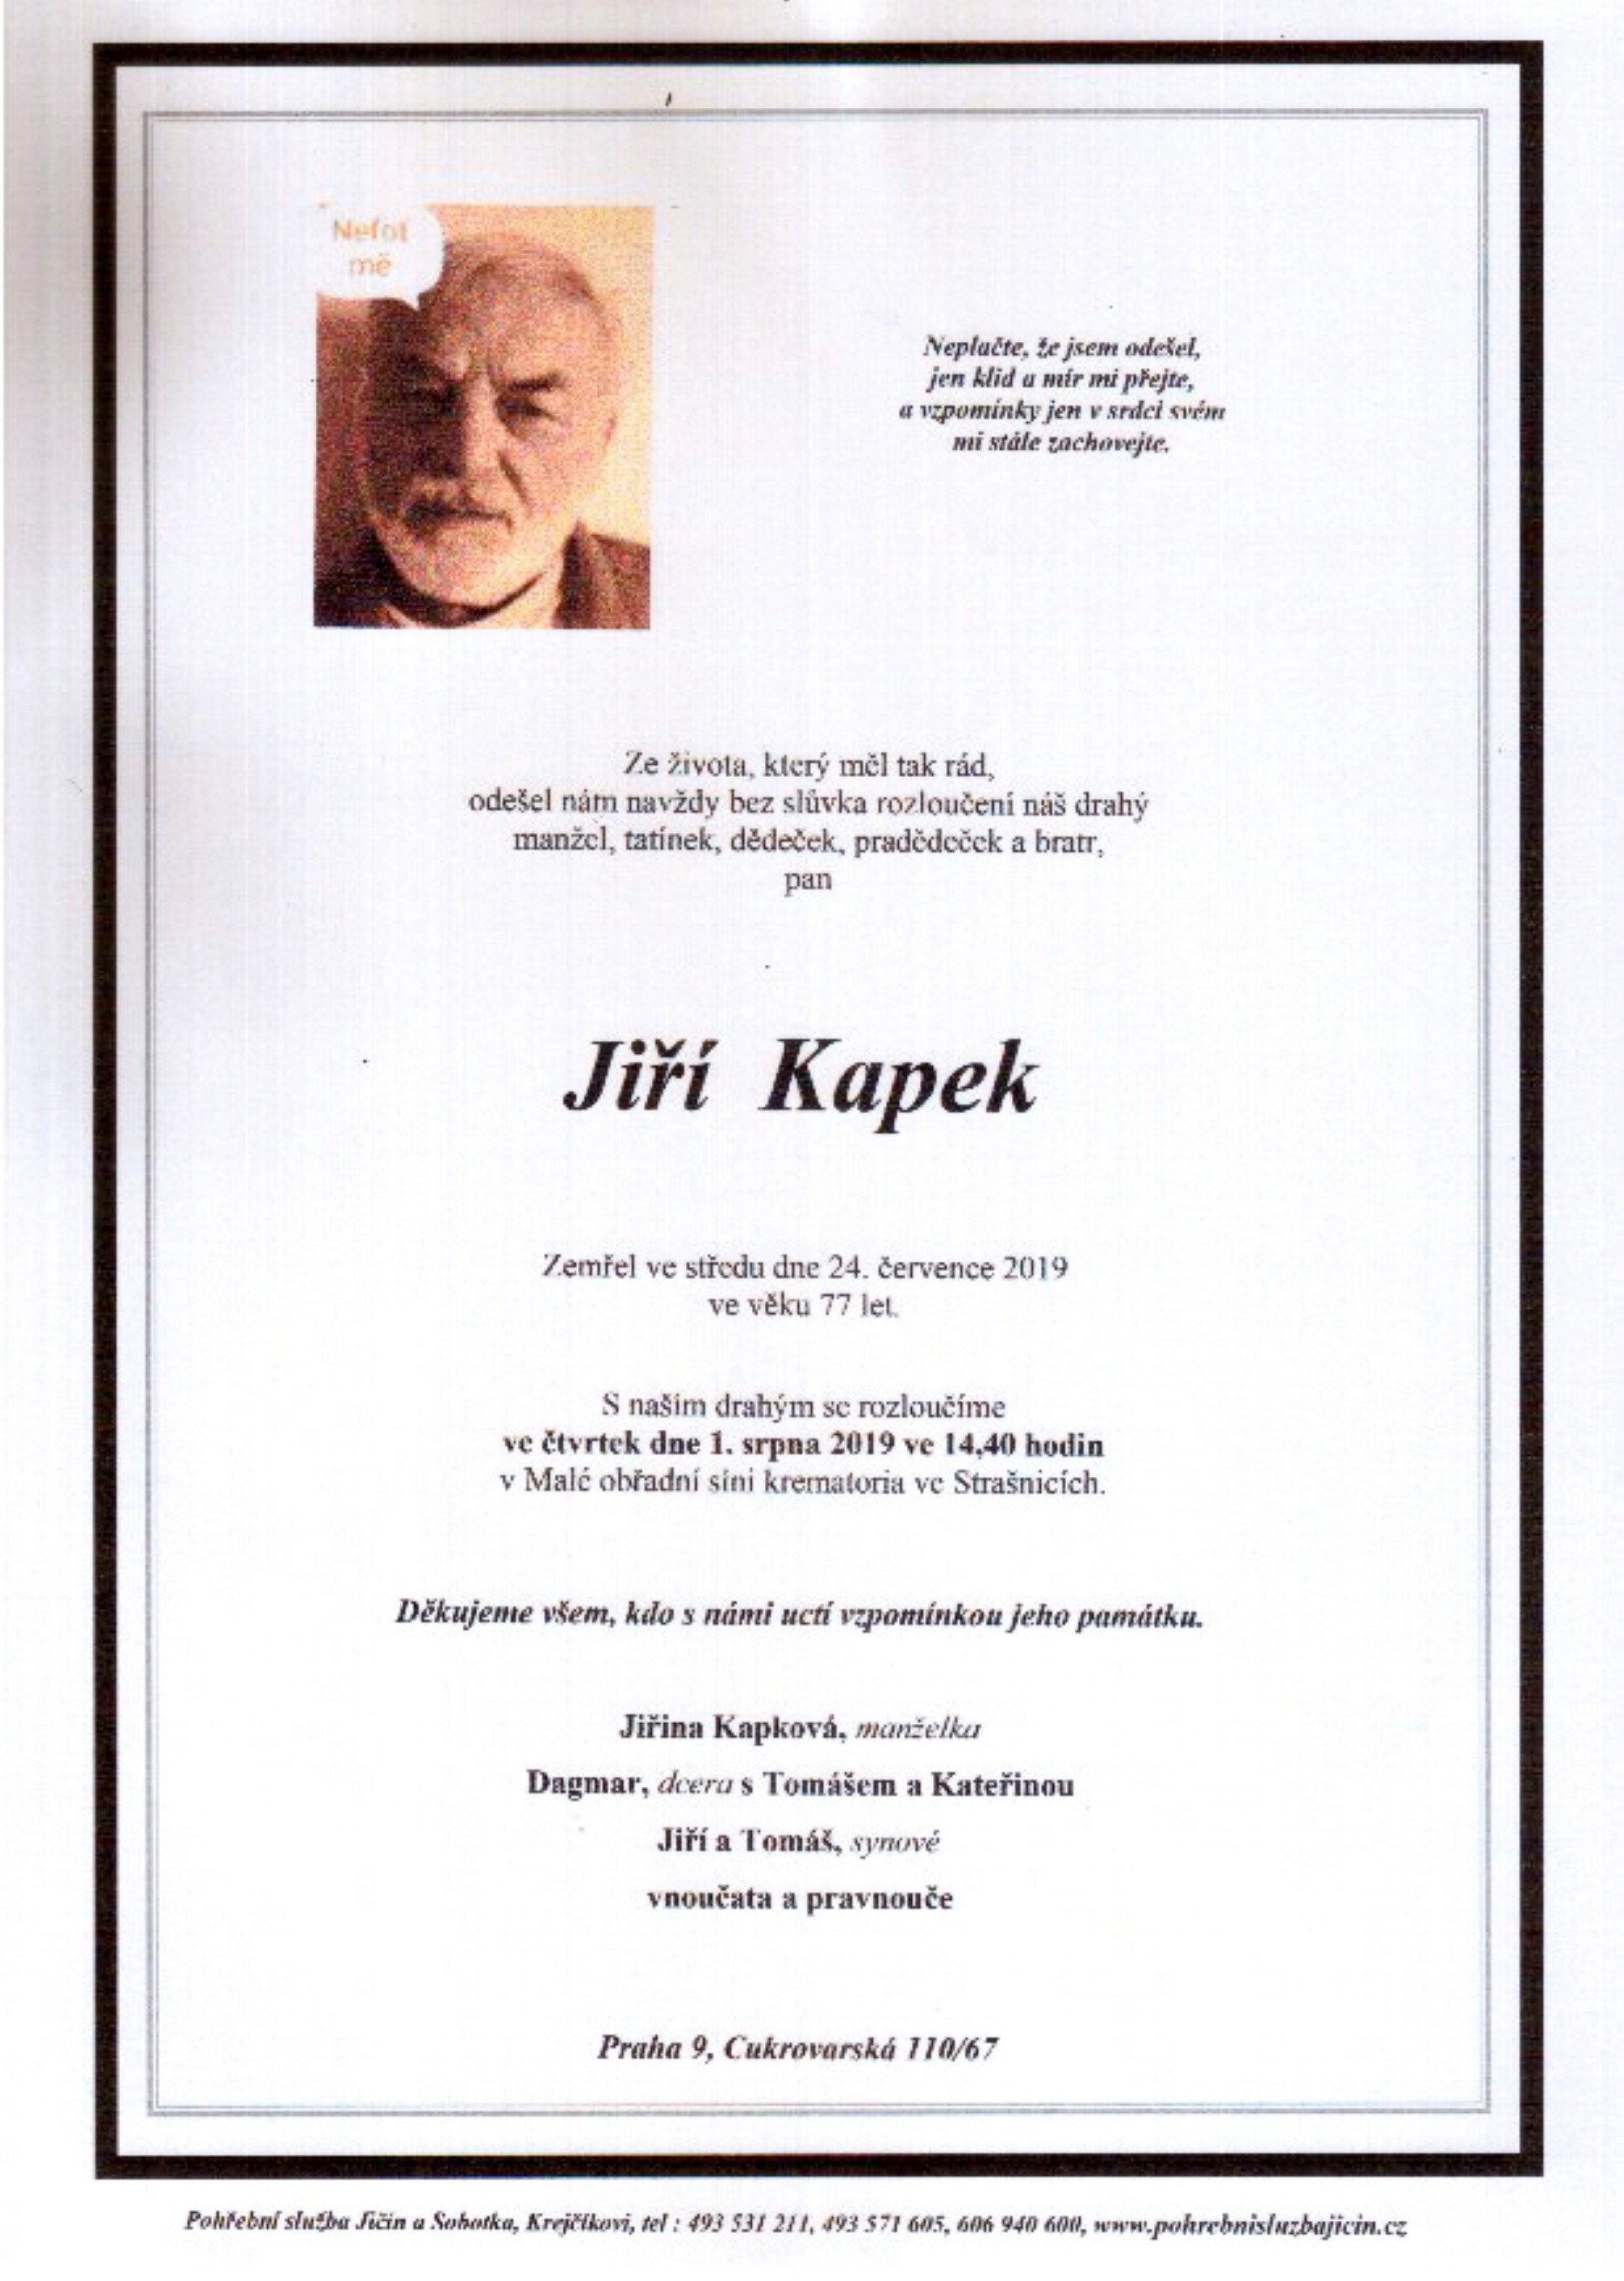 Jiří Kapek